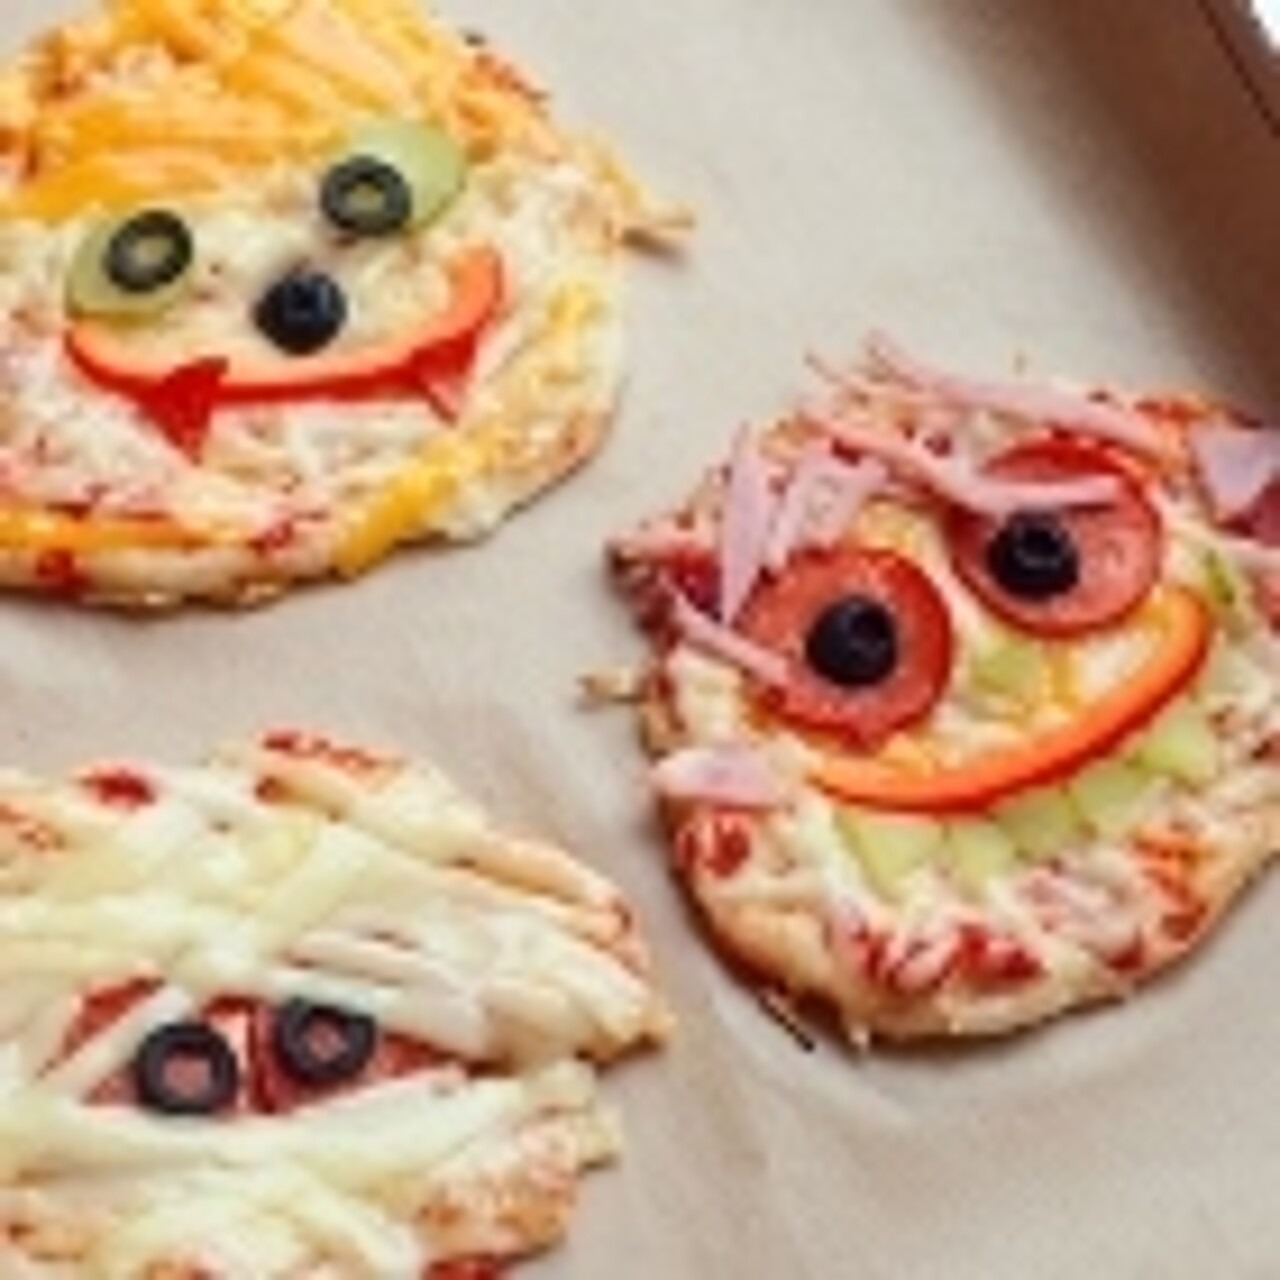 Bild von drei Pizzagesichtern